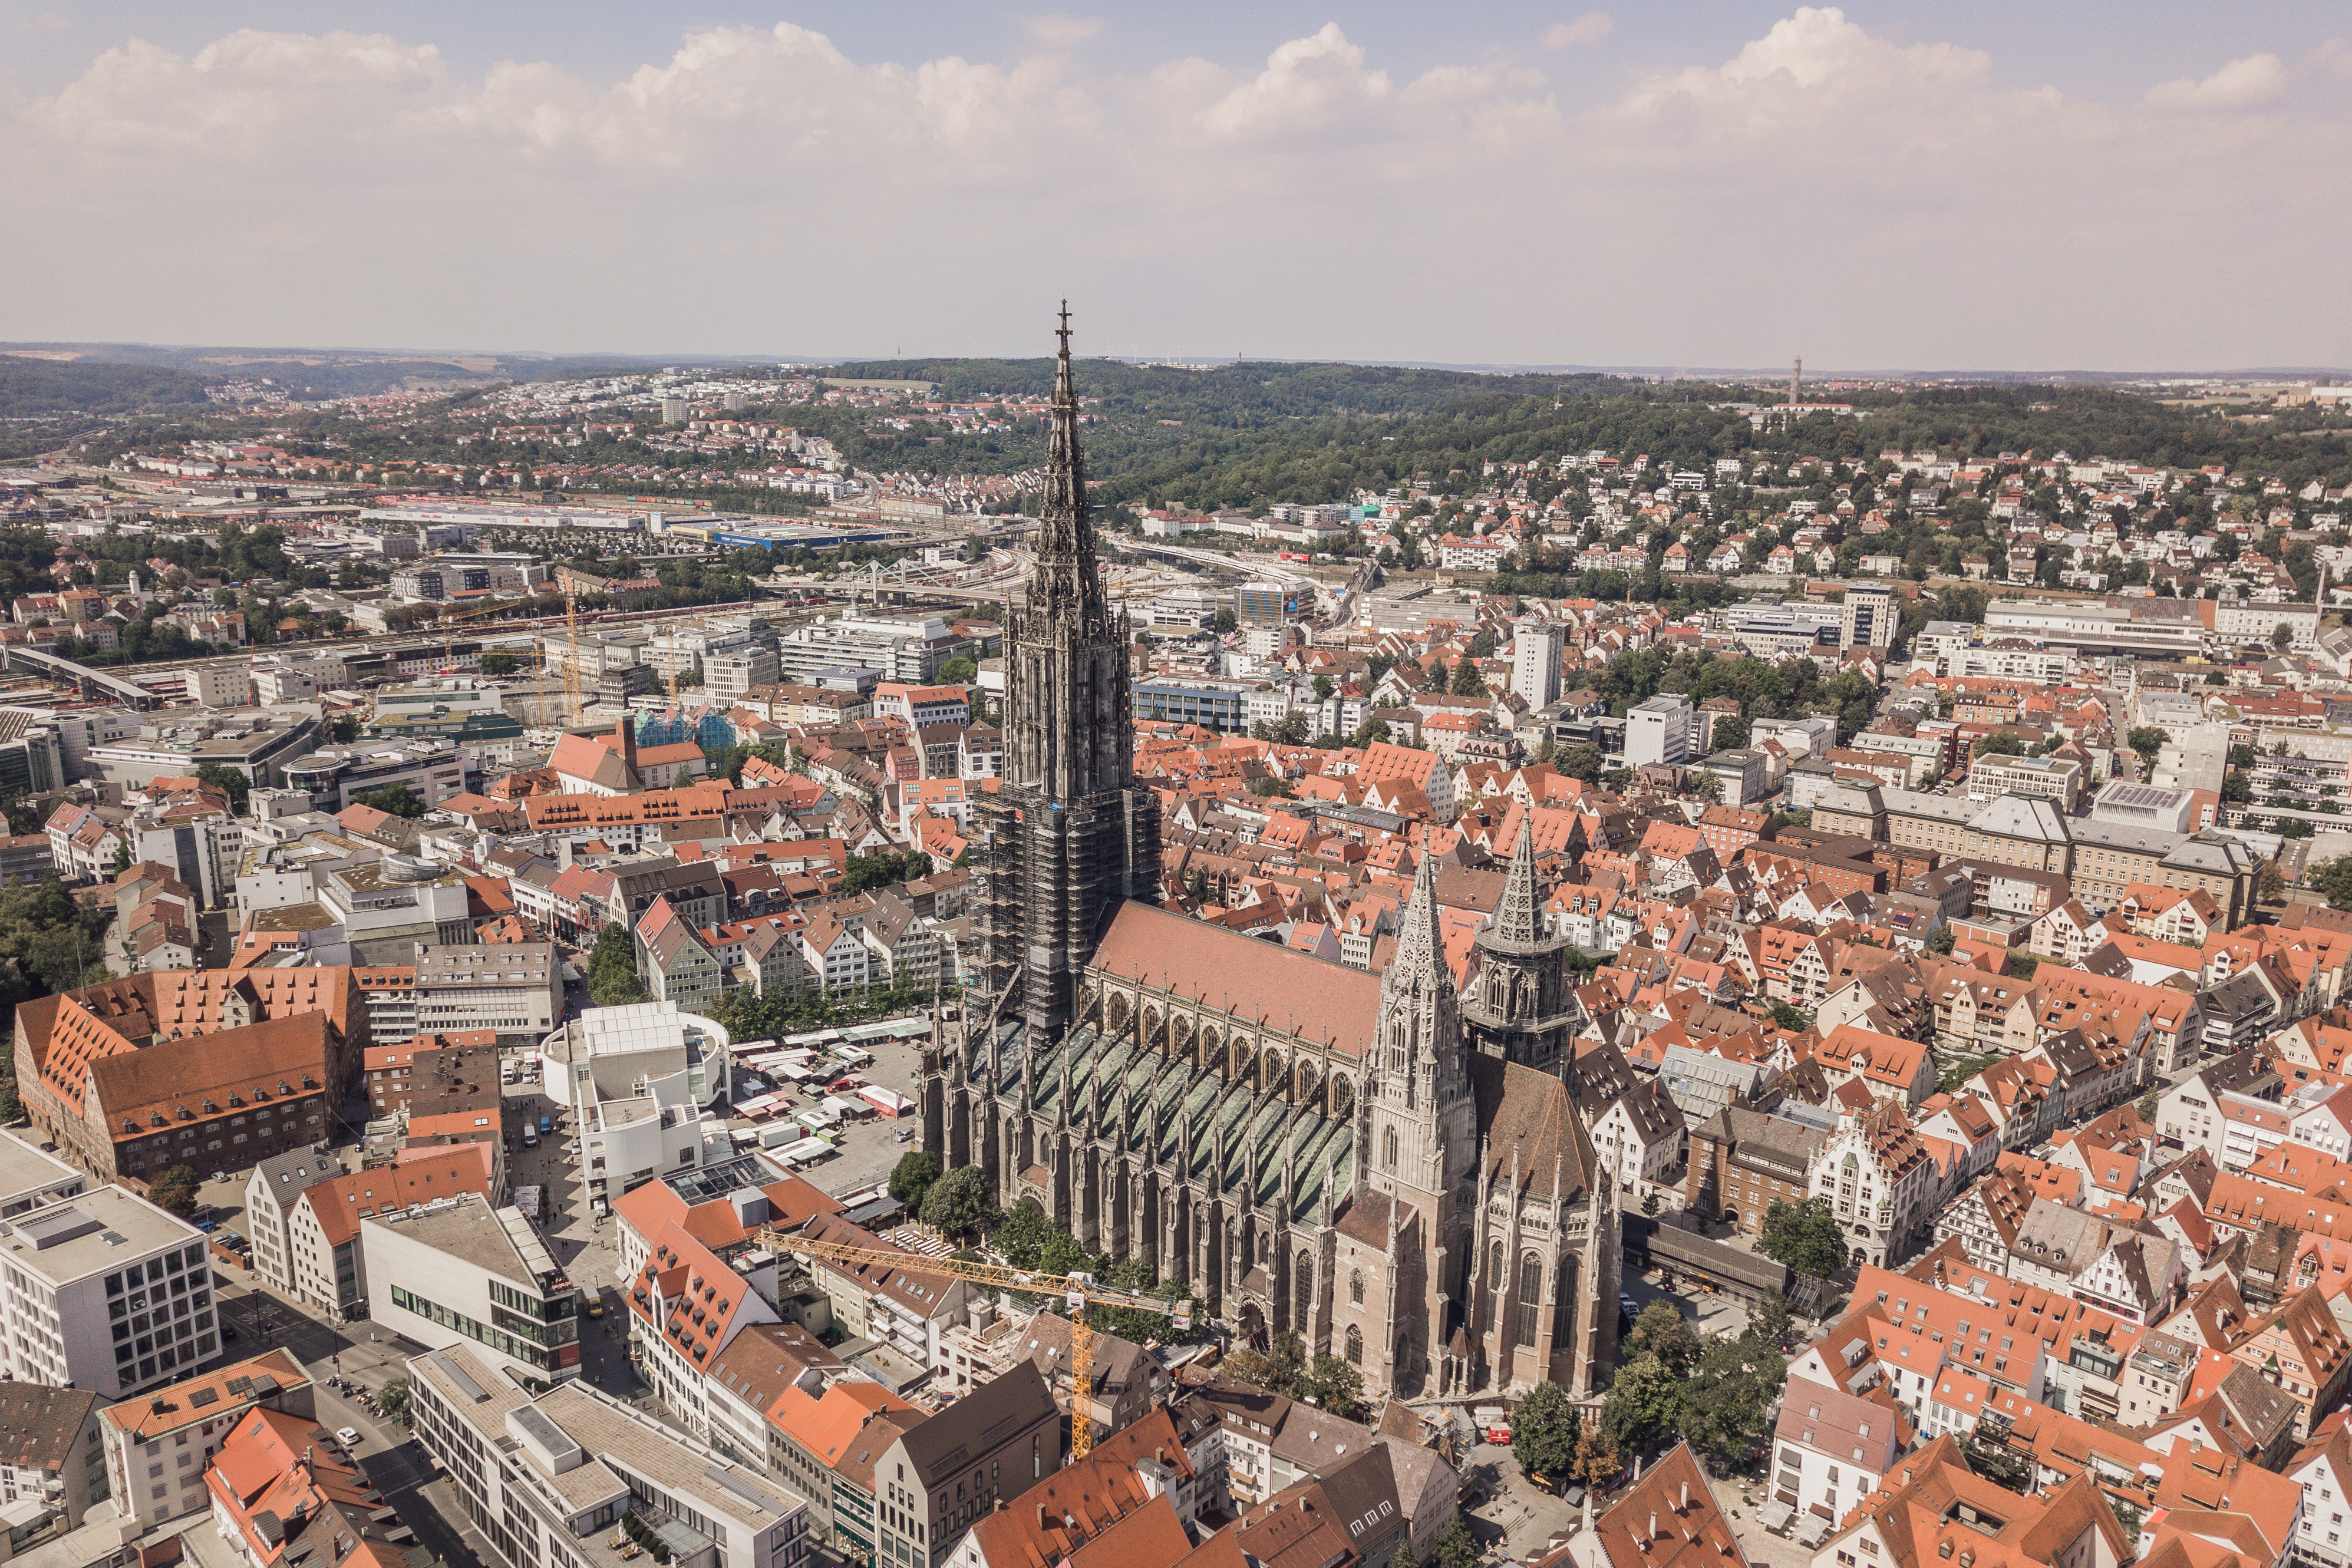 Aerial view of Ulm Minster